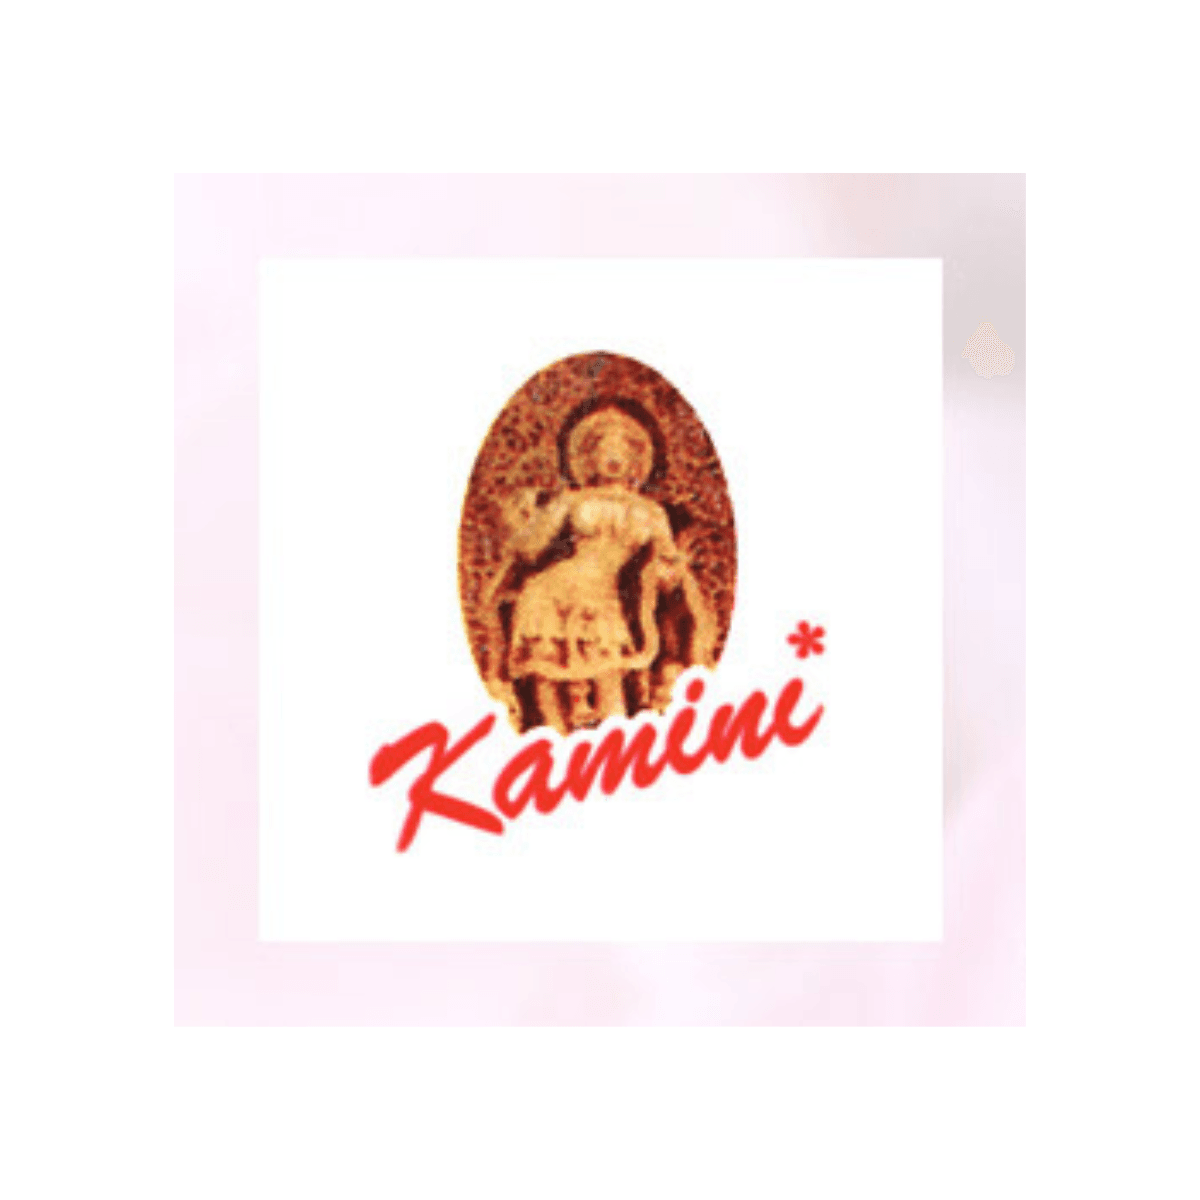 Kamini